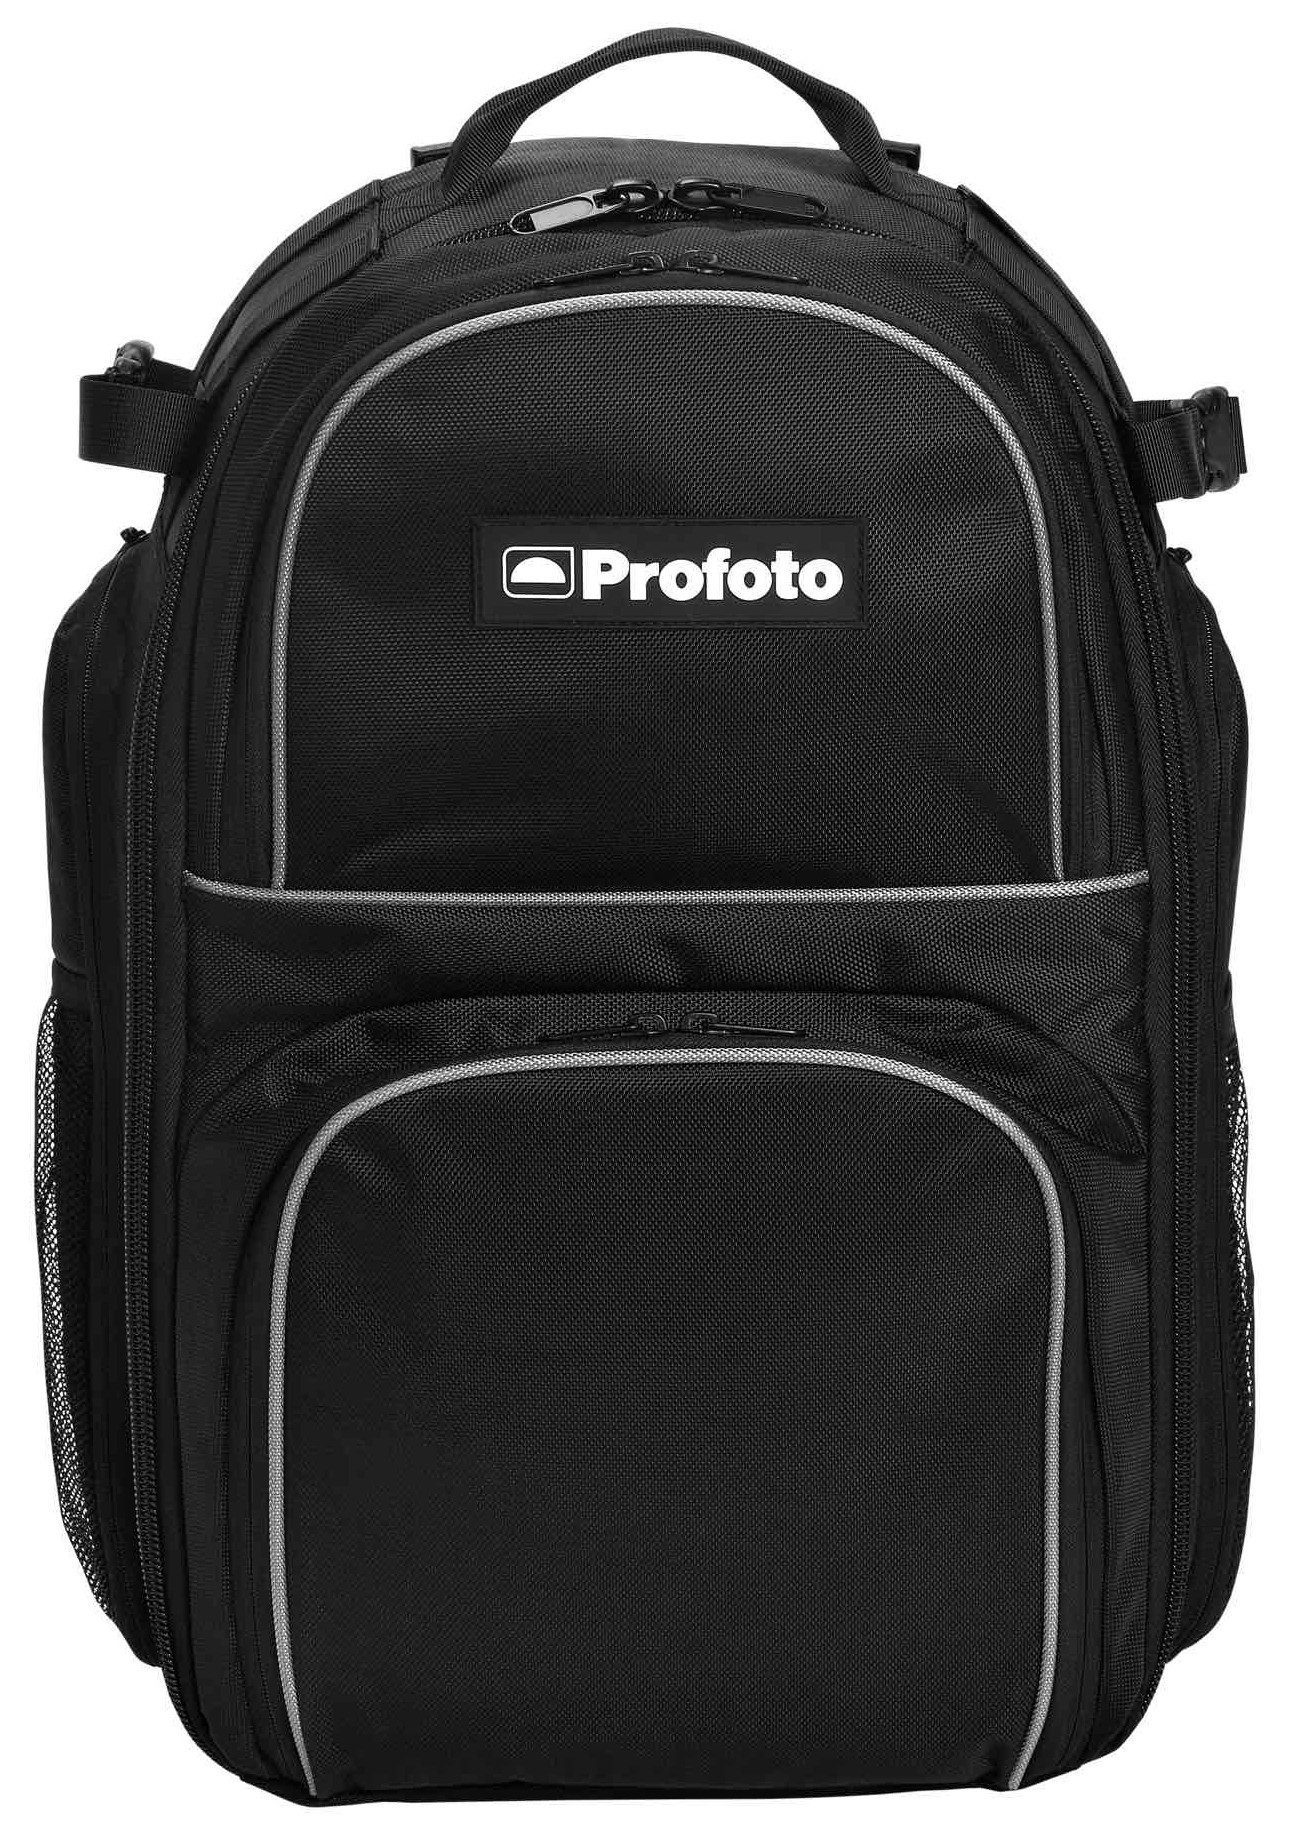 Profoto B1X Location Kit 500 AirTTL